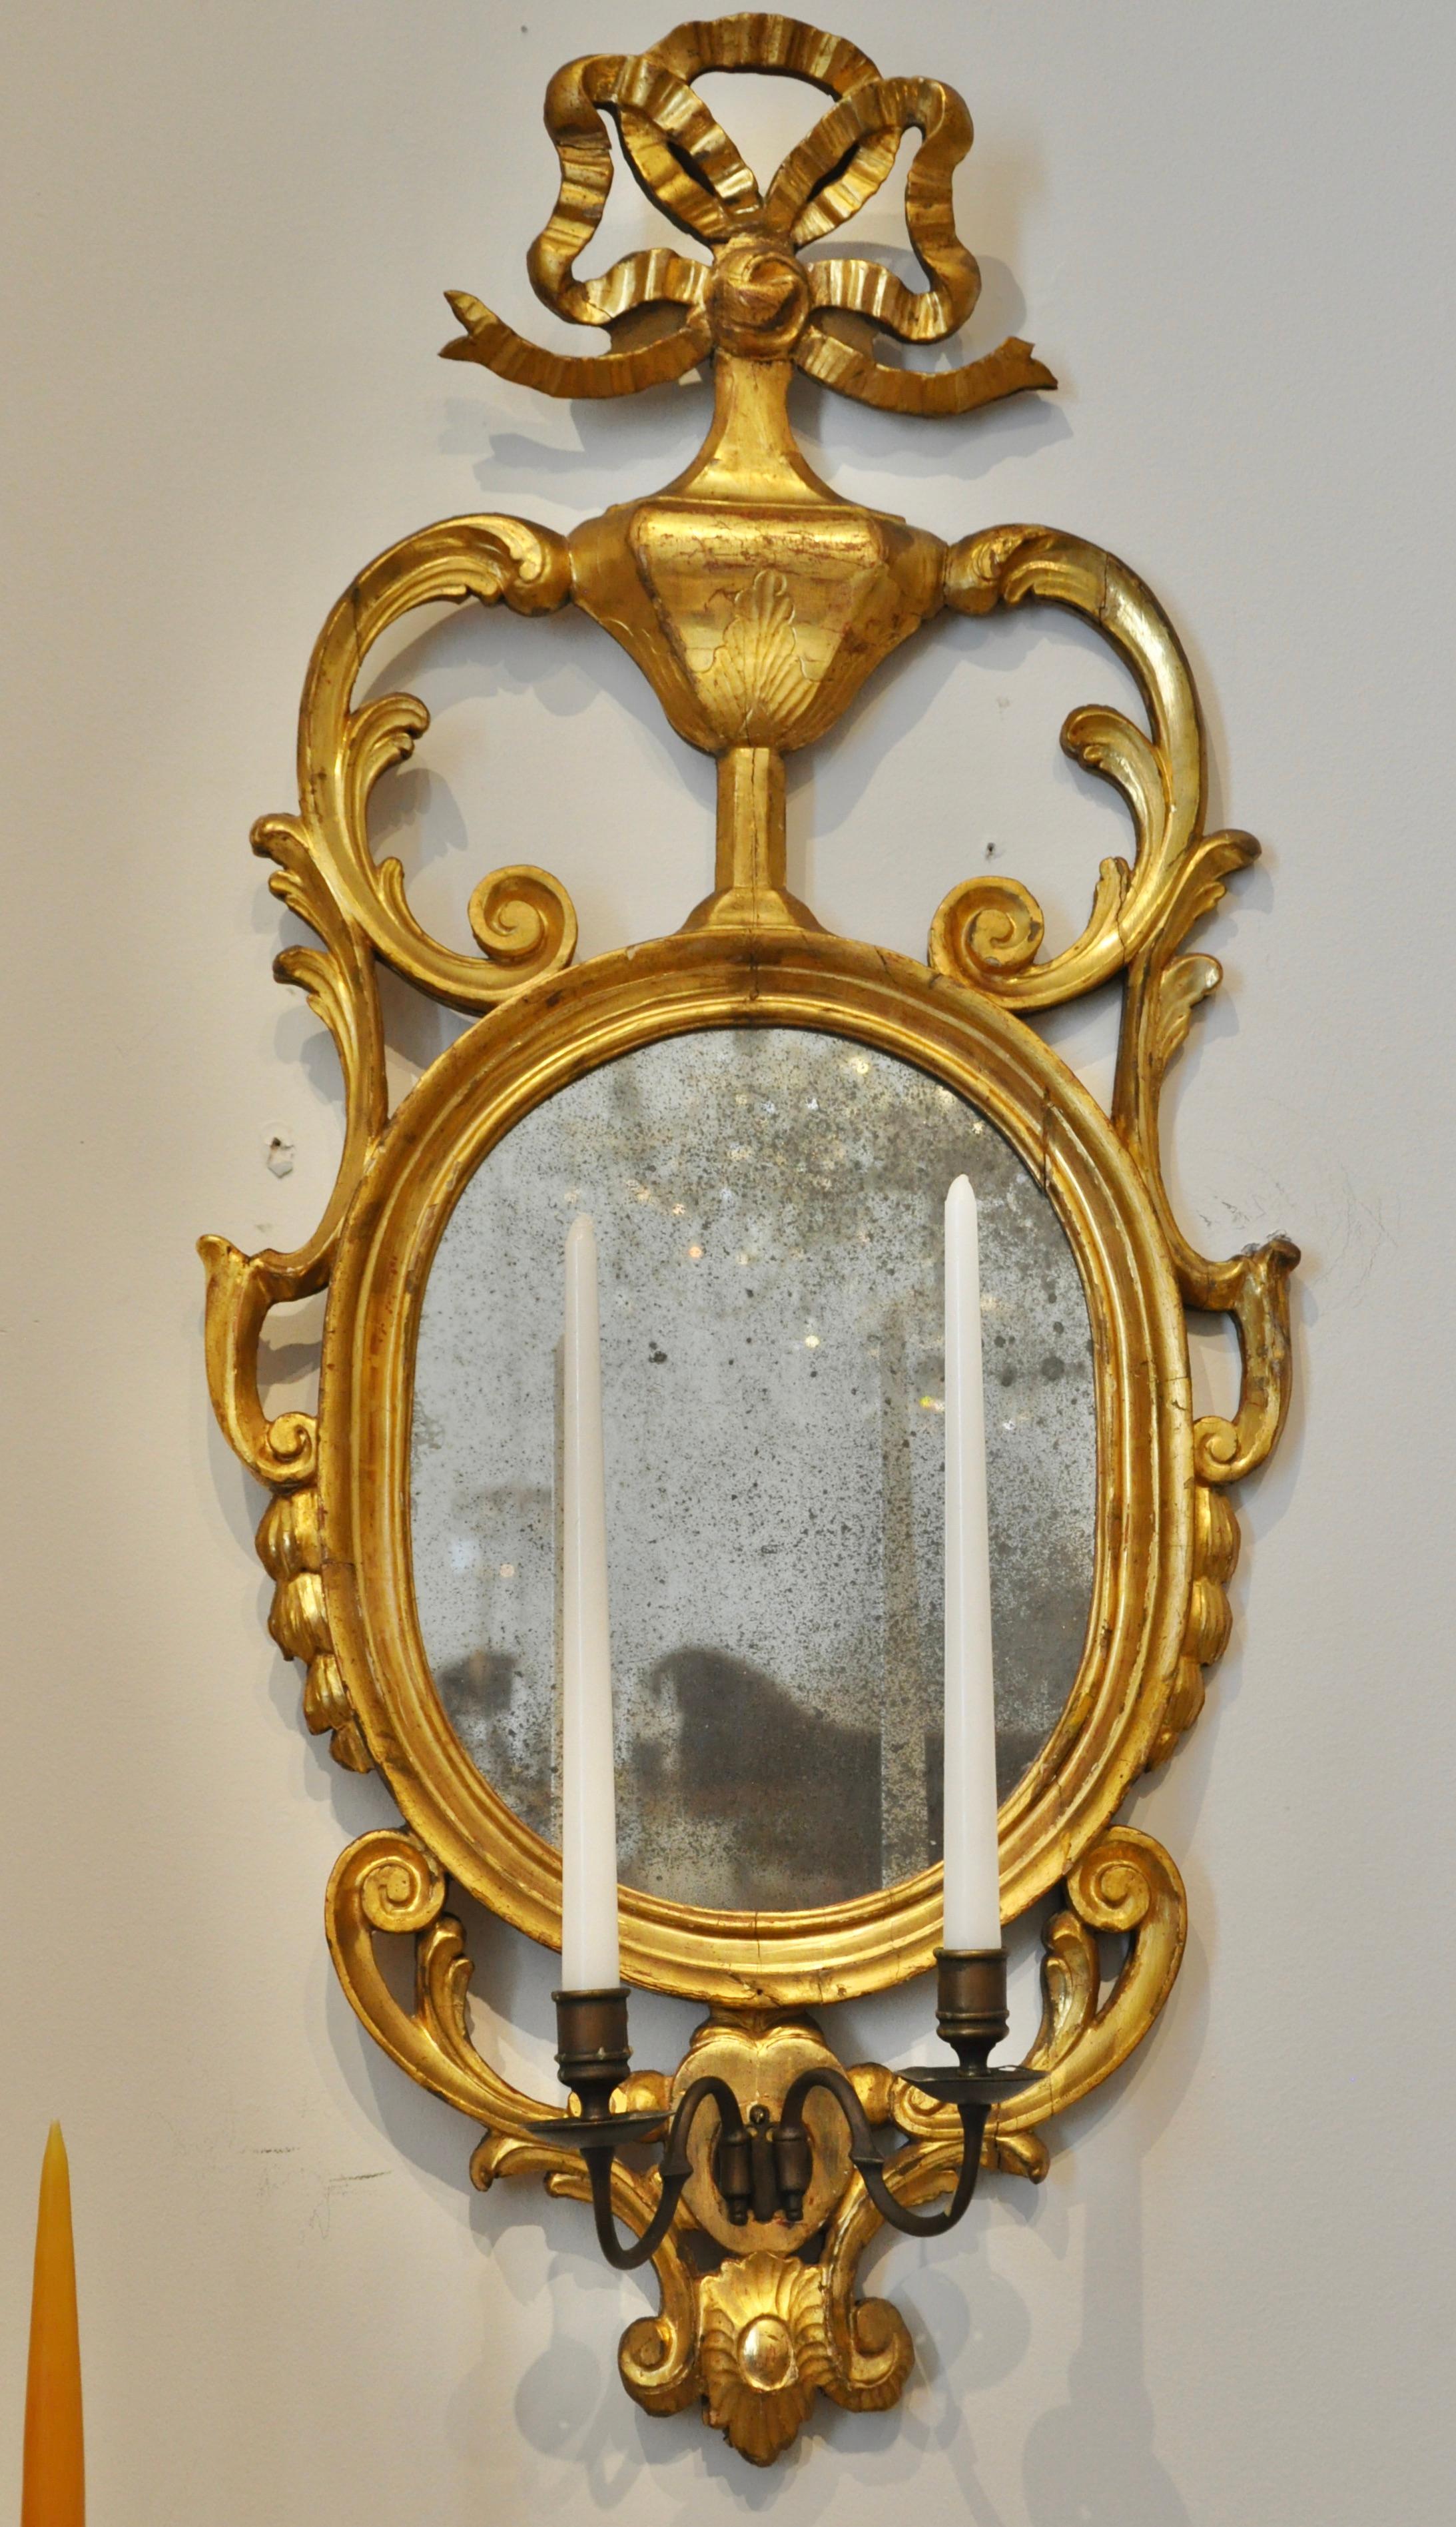 Paire de miroirs d'applique continentaux du début du 19e siècle avec verre d'origine et dorure d'origine. Deux appliques à bras pour les bougies. Grande taille et magnifiques sculptures originales en dorure à l'eau. Motif supérieur néoclassique en